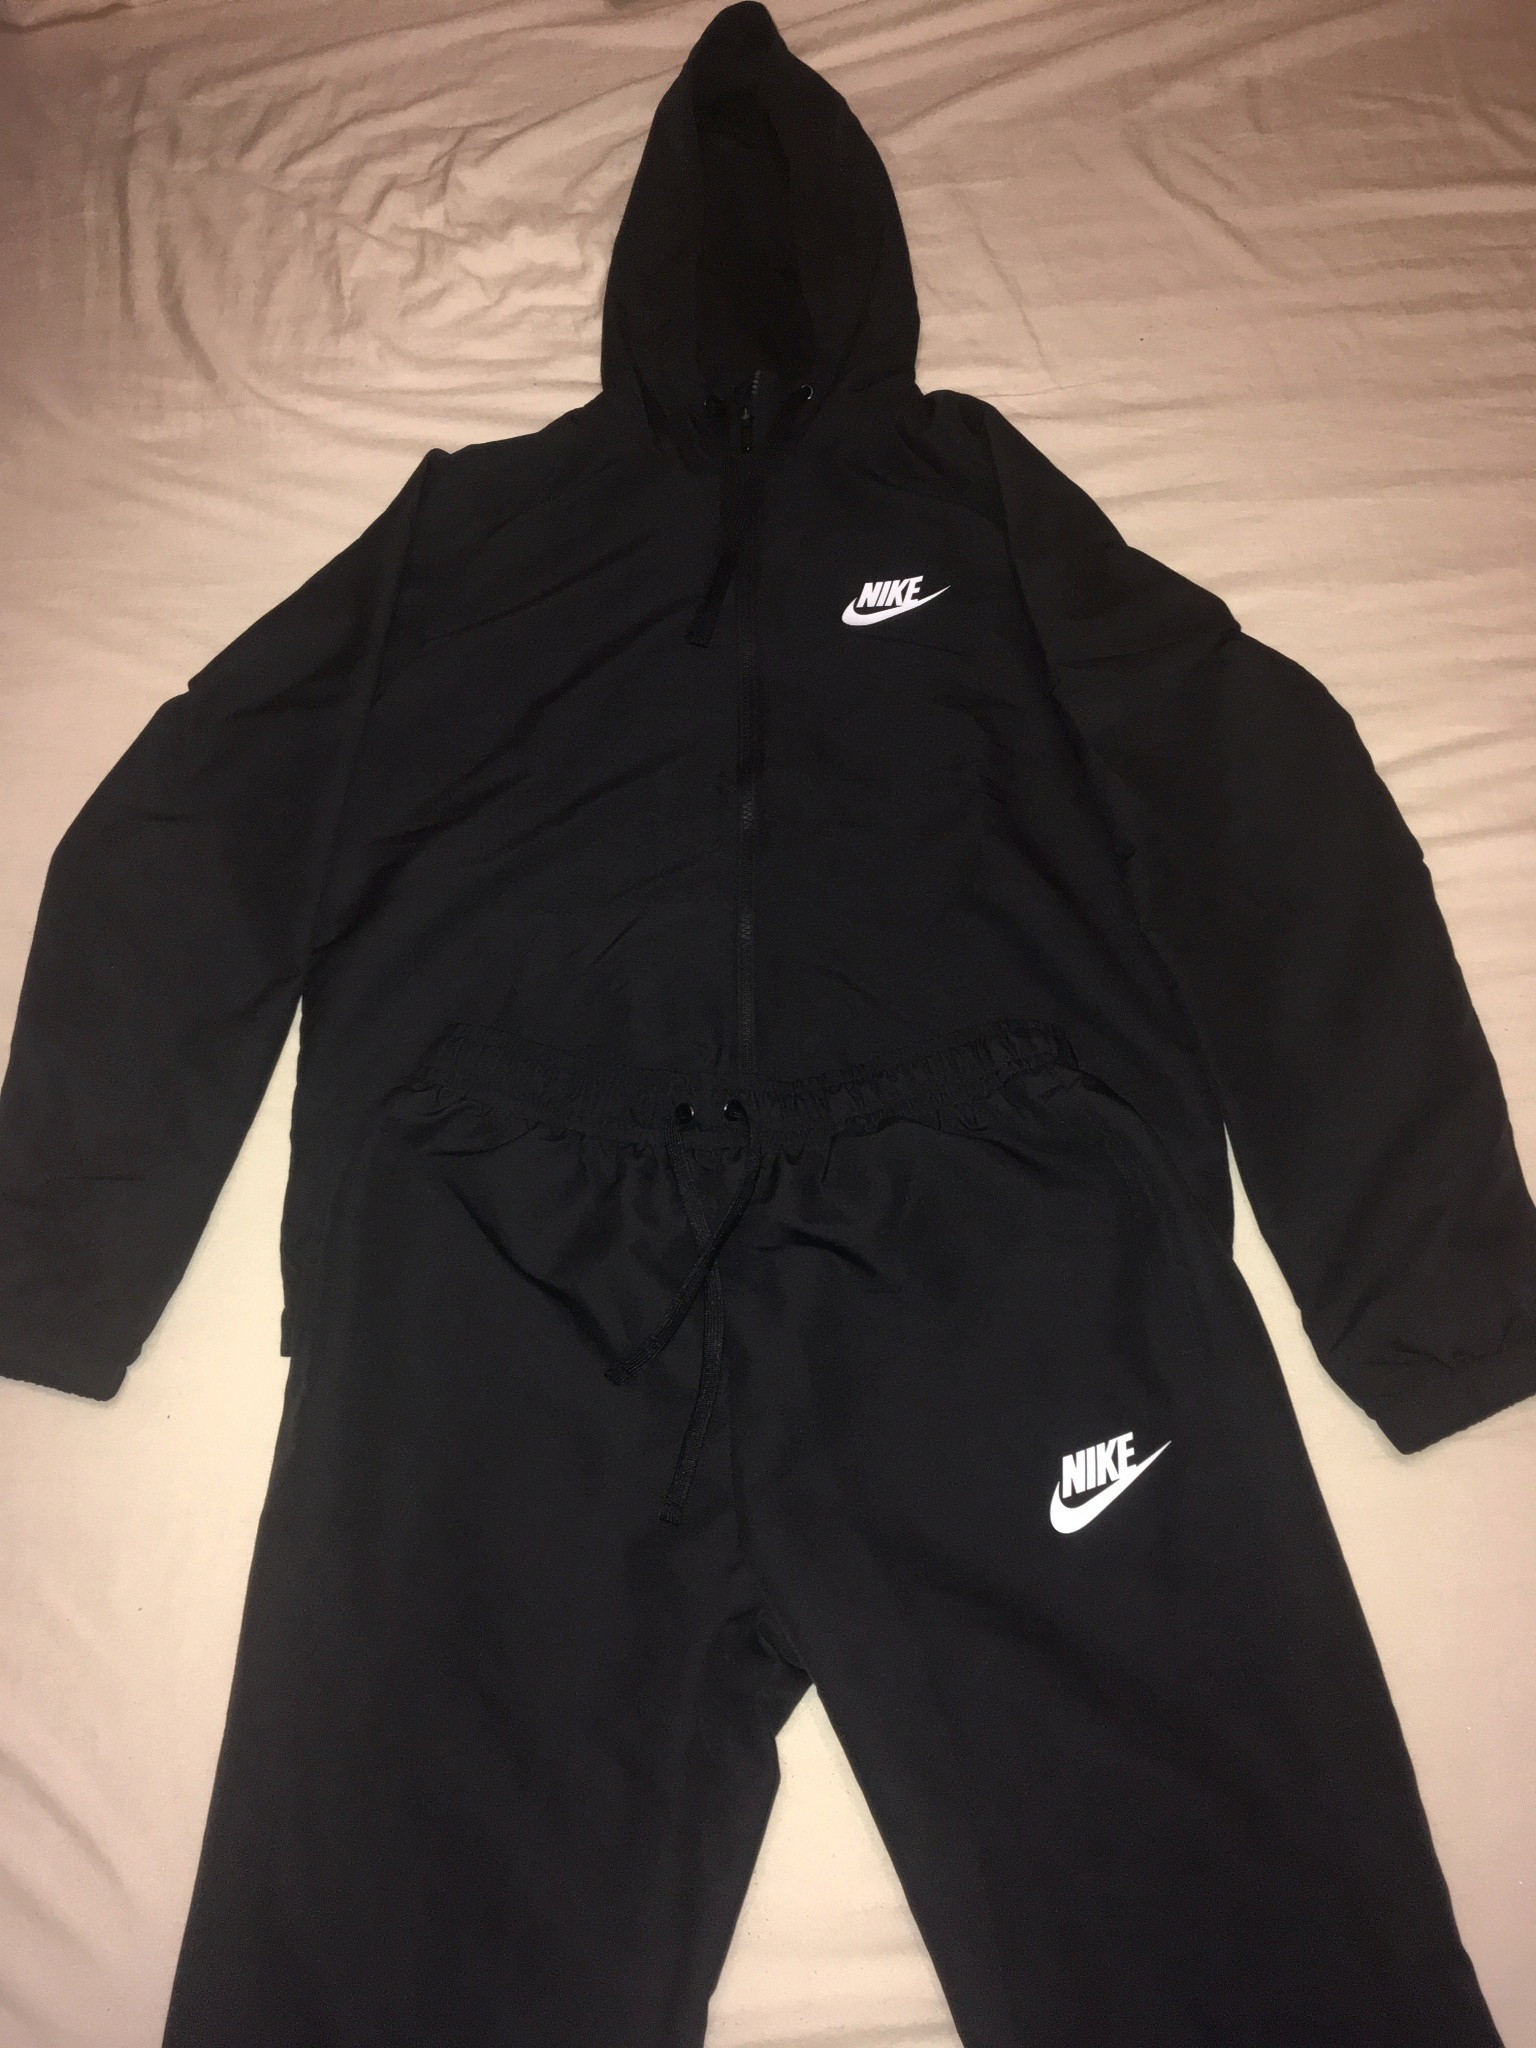 Обзор от покупателя на Спортивный костюм Nike NSW TRK SUIT HD WVN 861772-013 мужской, цвет черный, рус.размер 46-48 — интернет-магазин ОНЛАЙН ТРЕЙД.РУ